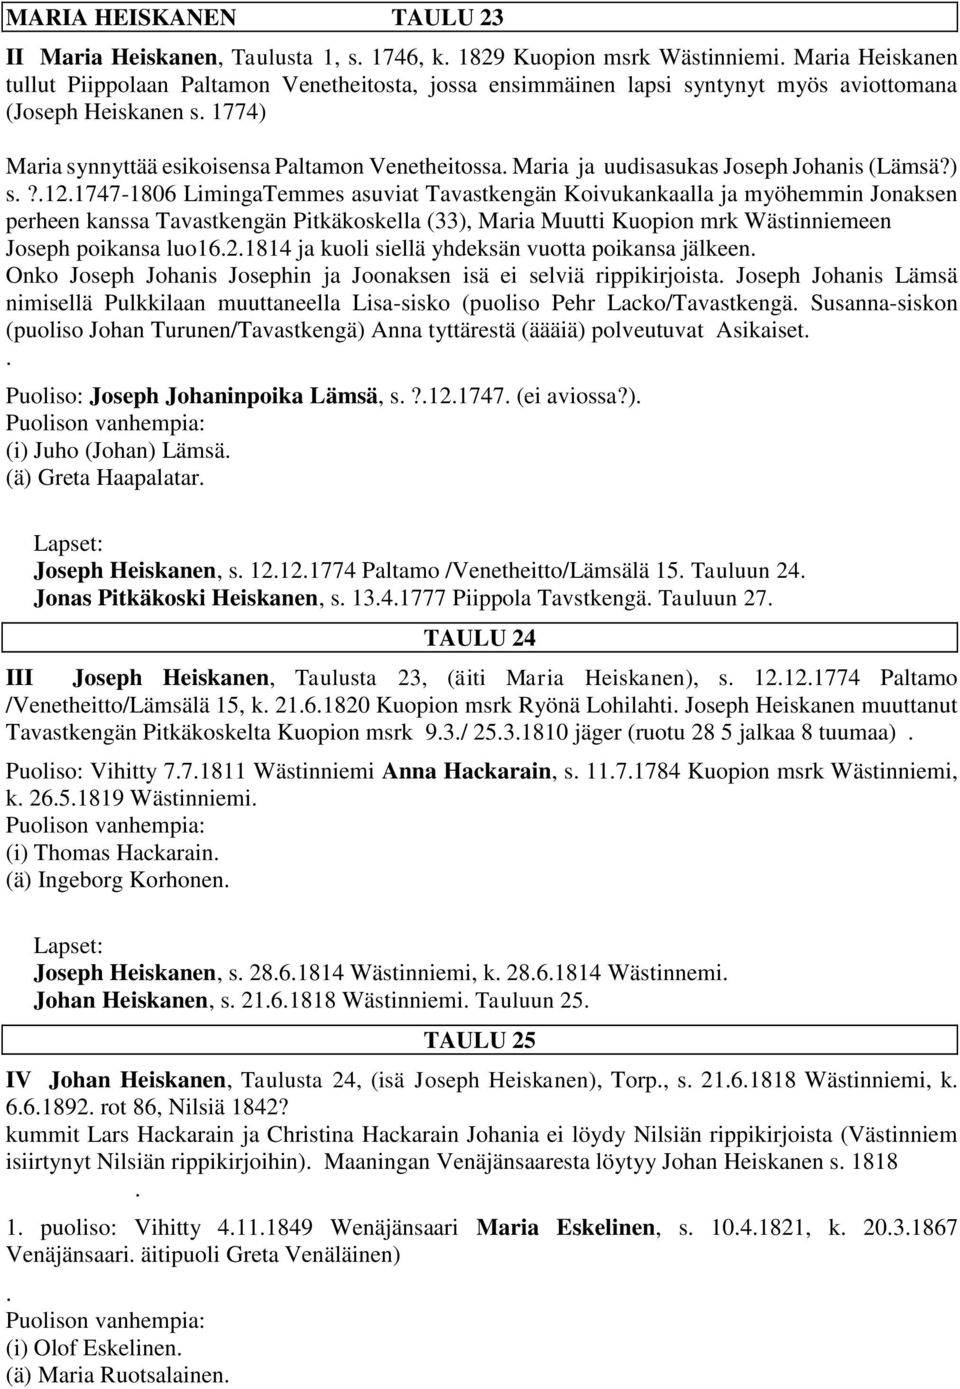 121747-1806 LimingaTemmes asuviat Tavastkengän Koivukankaalla ja myöhemmin Jonaksen perheen kanssa Tavastkengän Pitkäkoskella (33), Maria Muutti Kuopion mrk Wästinniemeen Joseph poikansa luo1621814